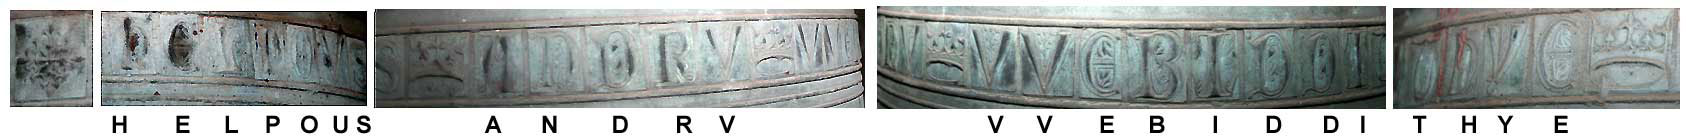 Church bell inscription part 1